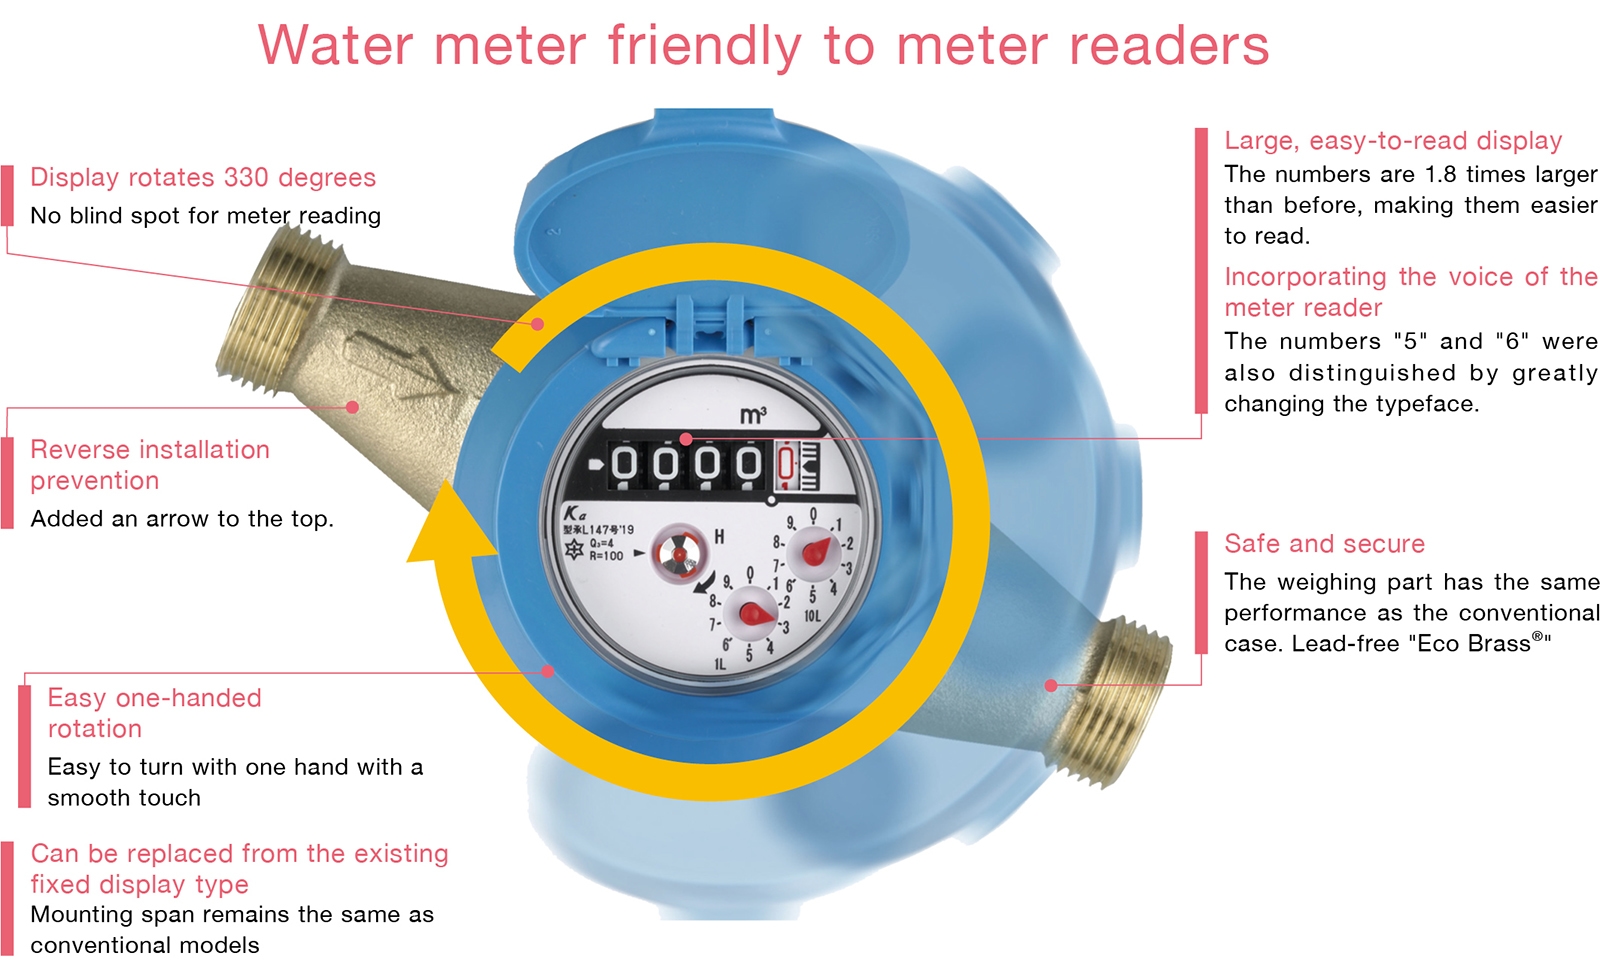 Water meter friendly to meter readers